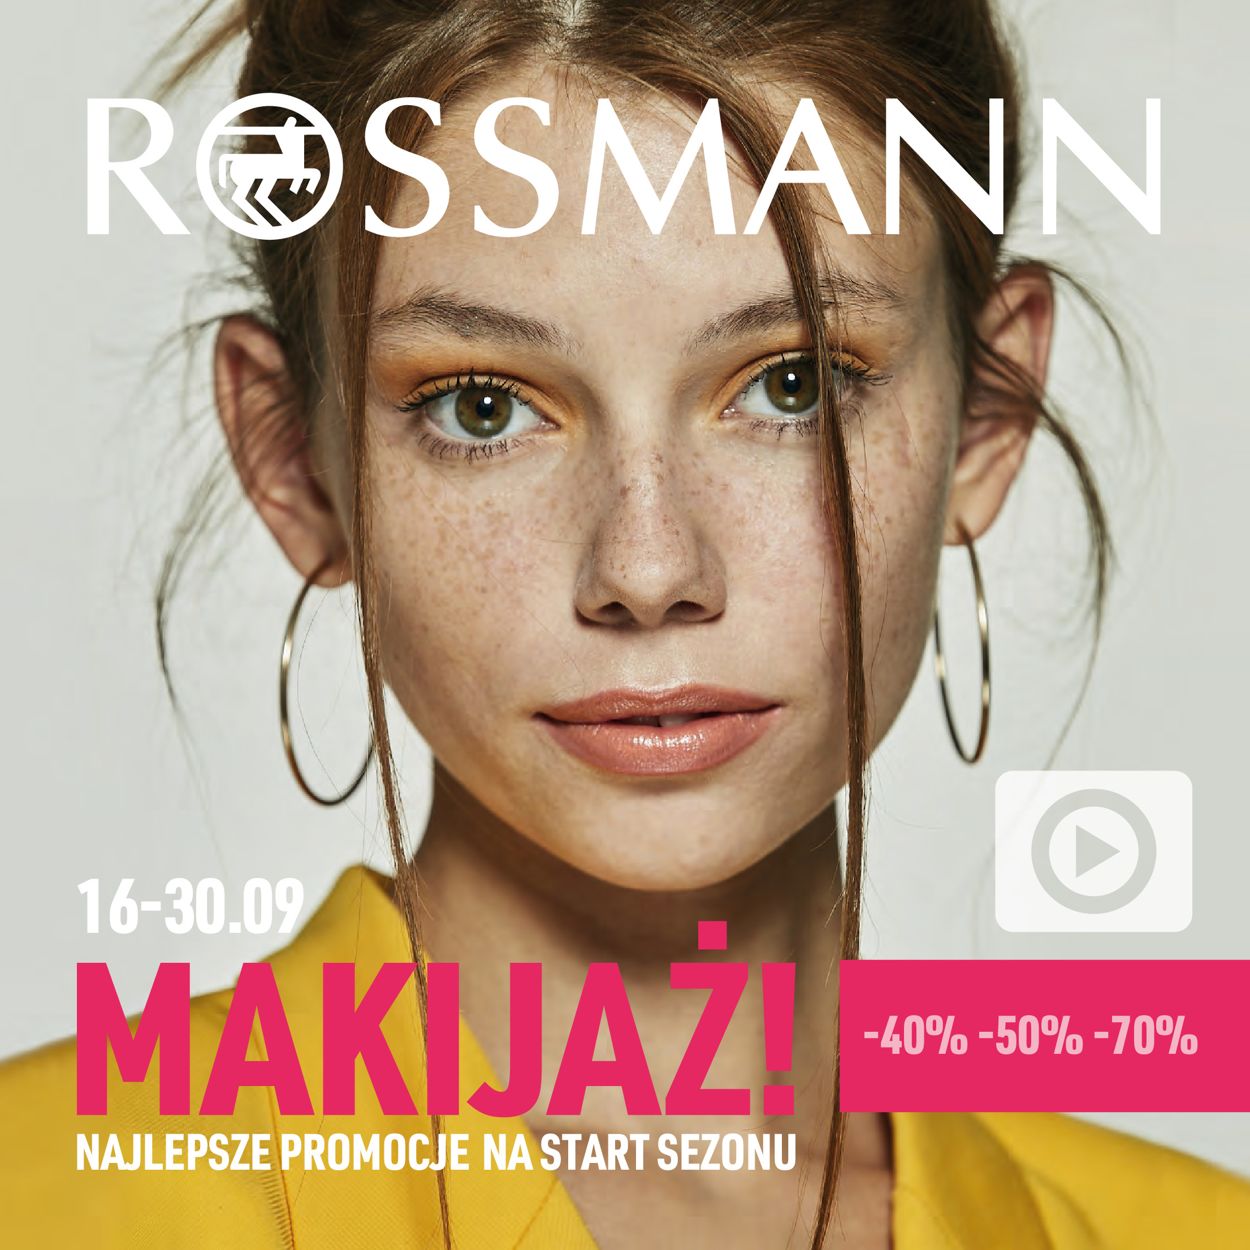 Gazetka promocyjna Rossmann - 16.09-30.09.2019